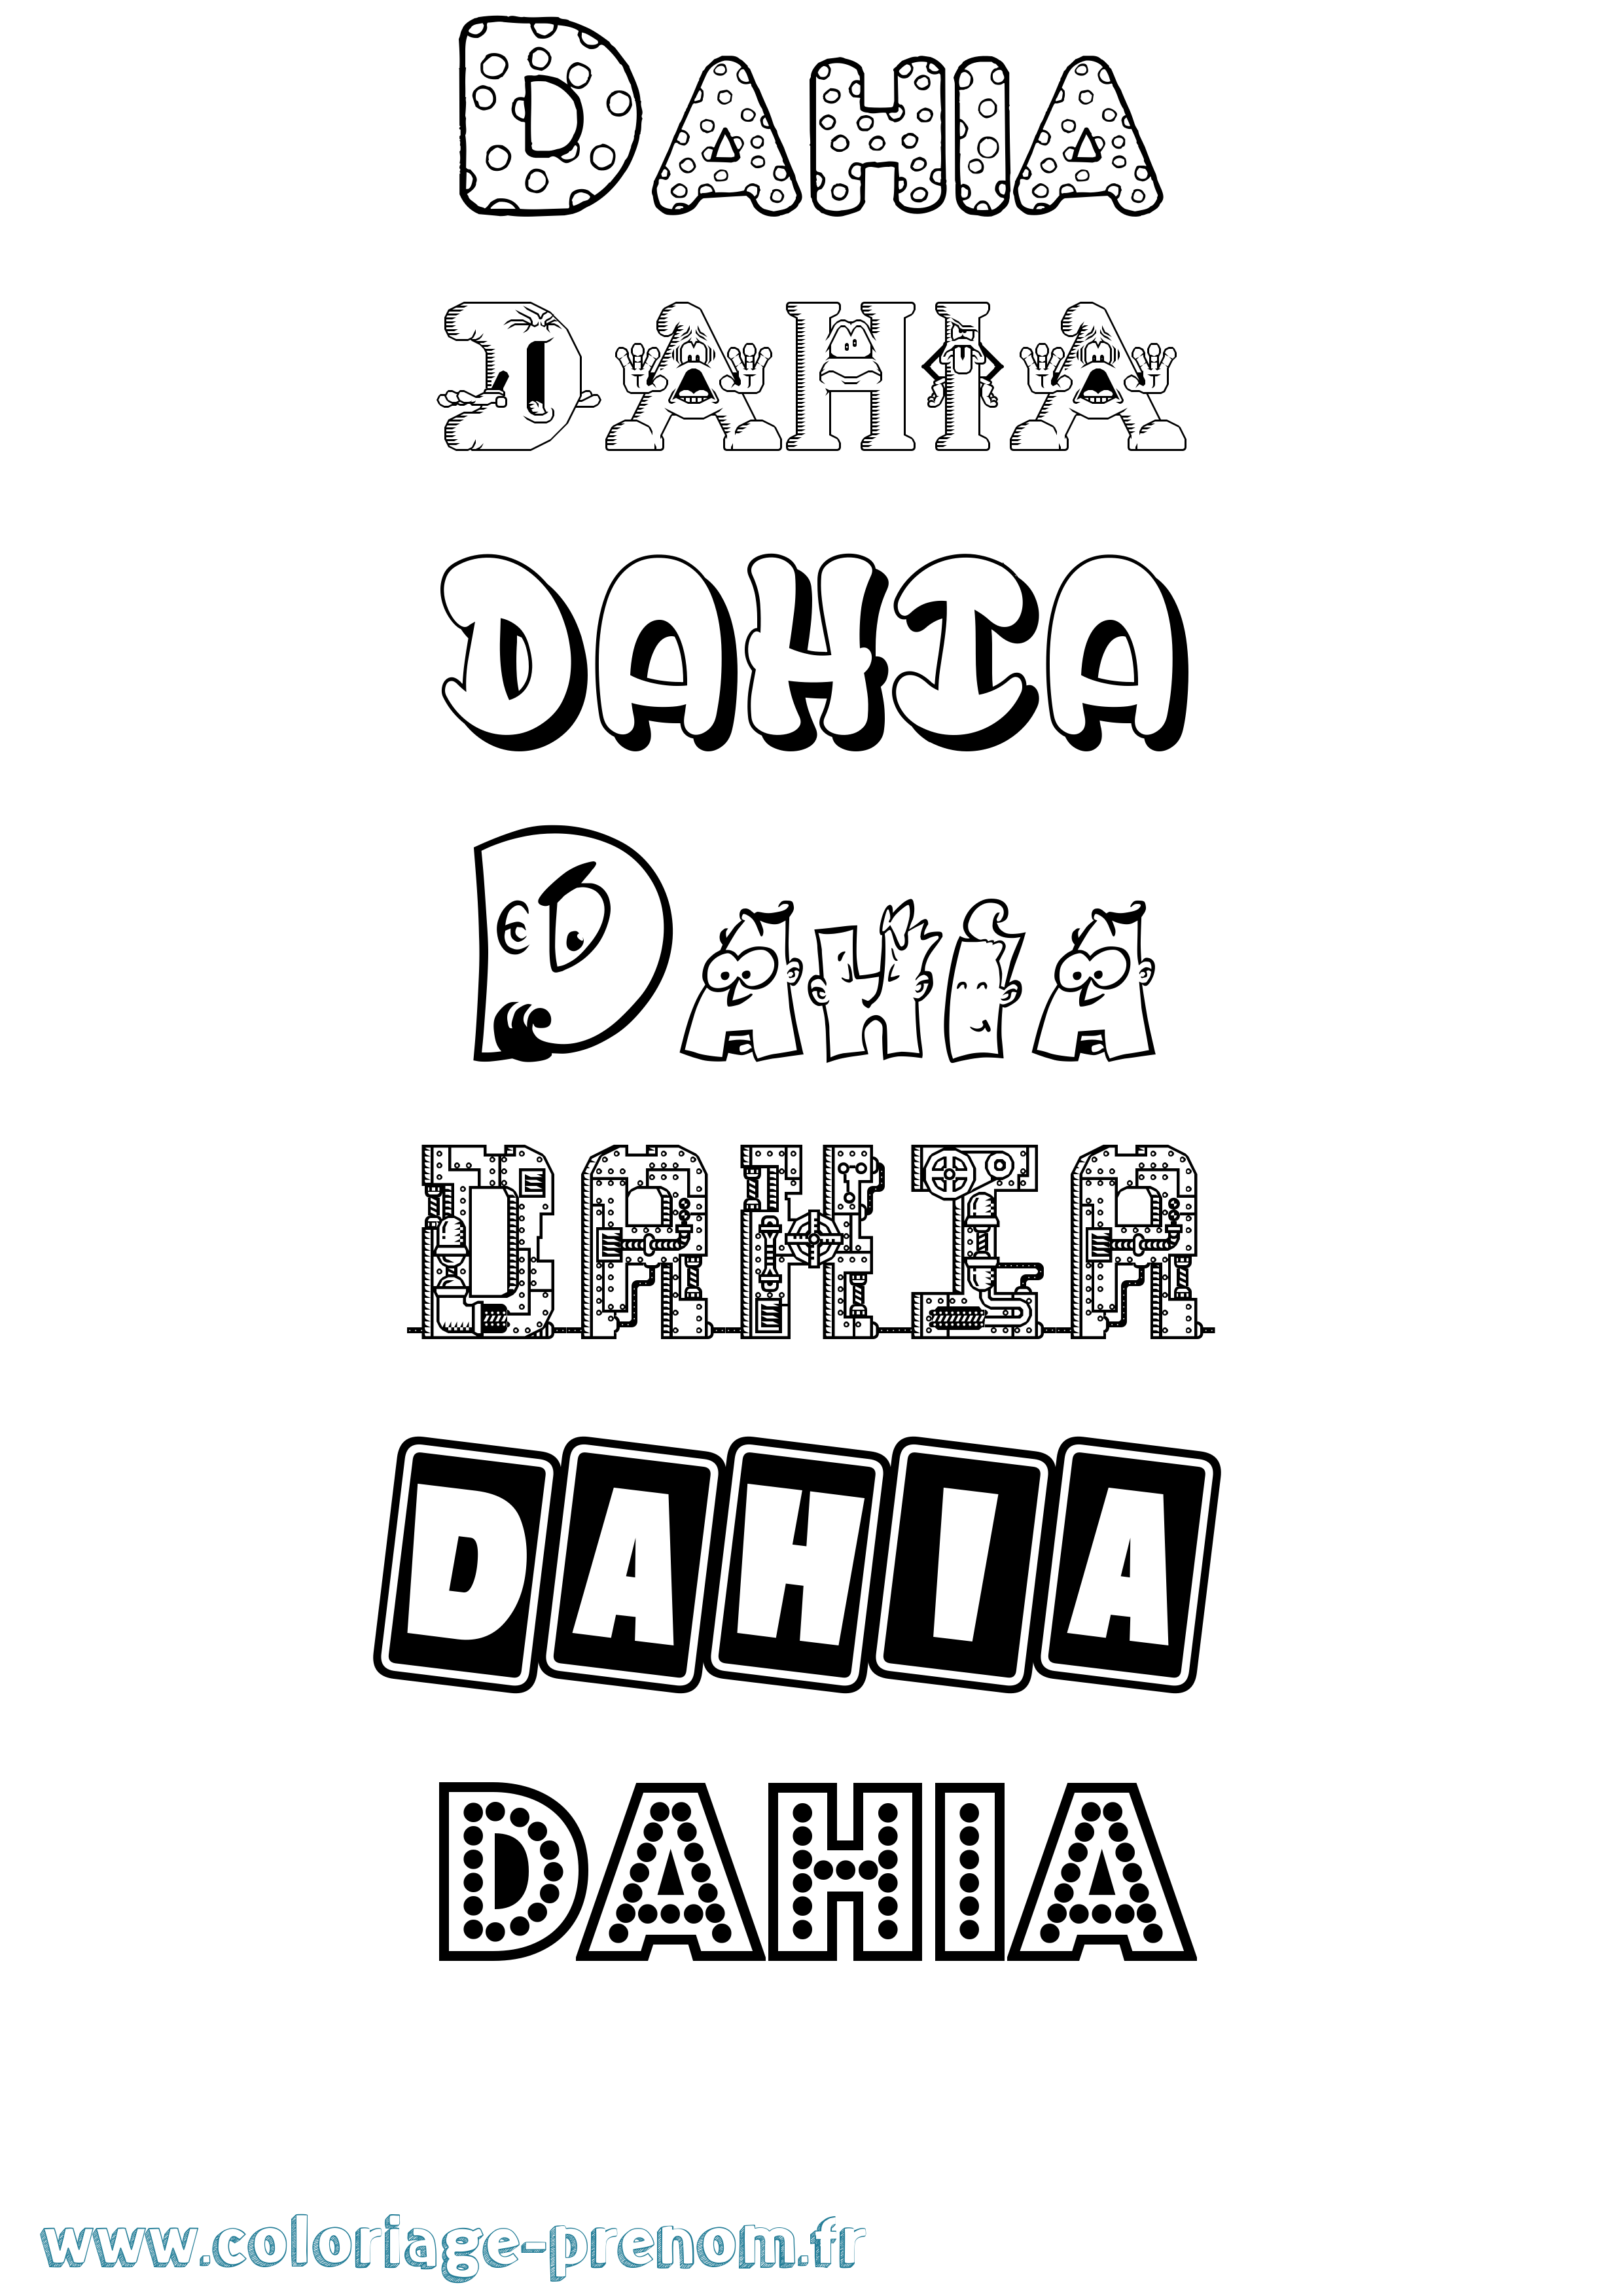 Coloriage prénom Dahia Fun